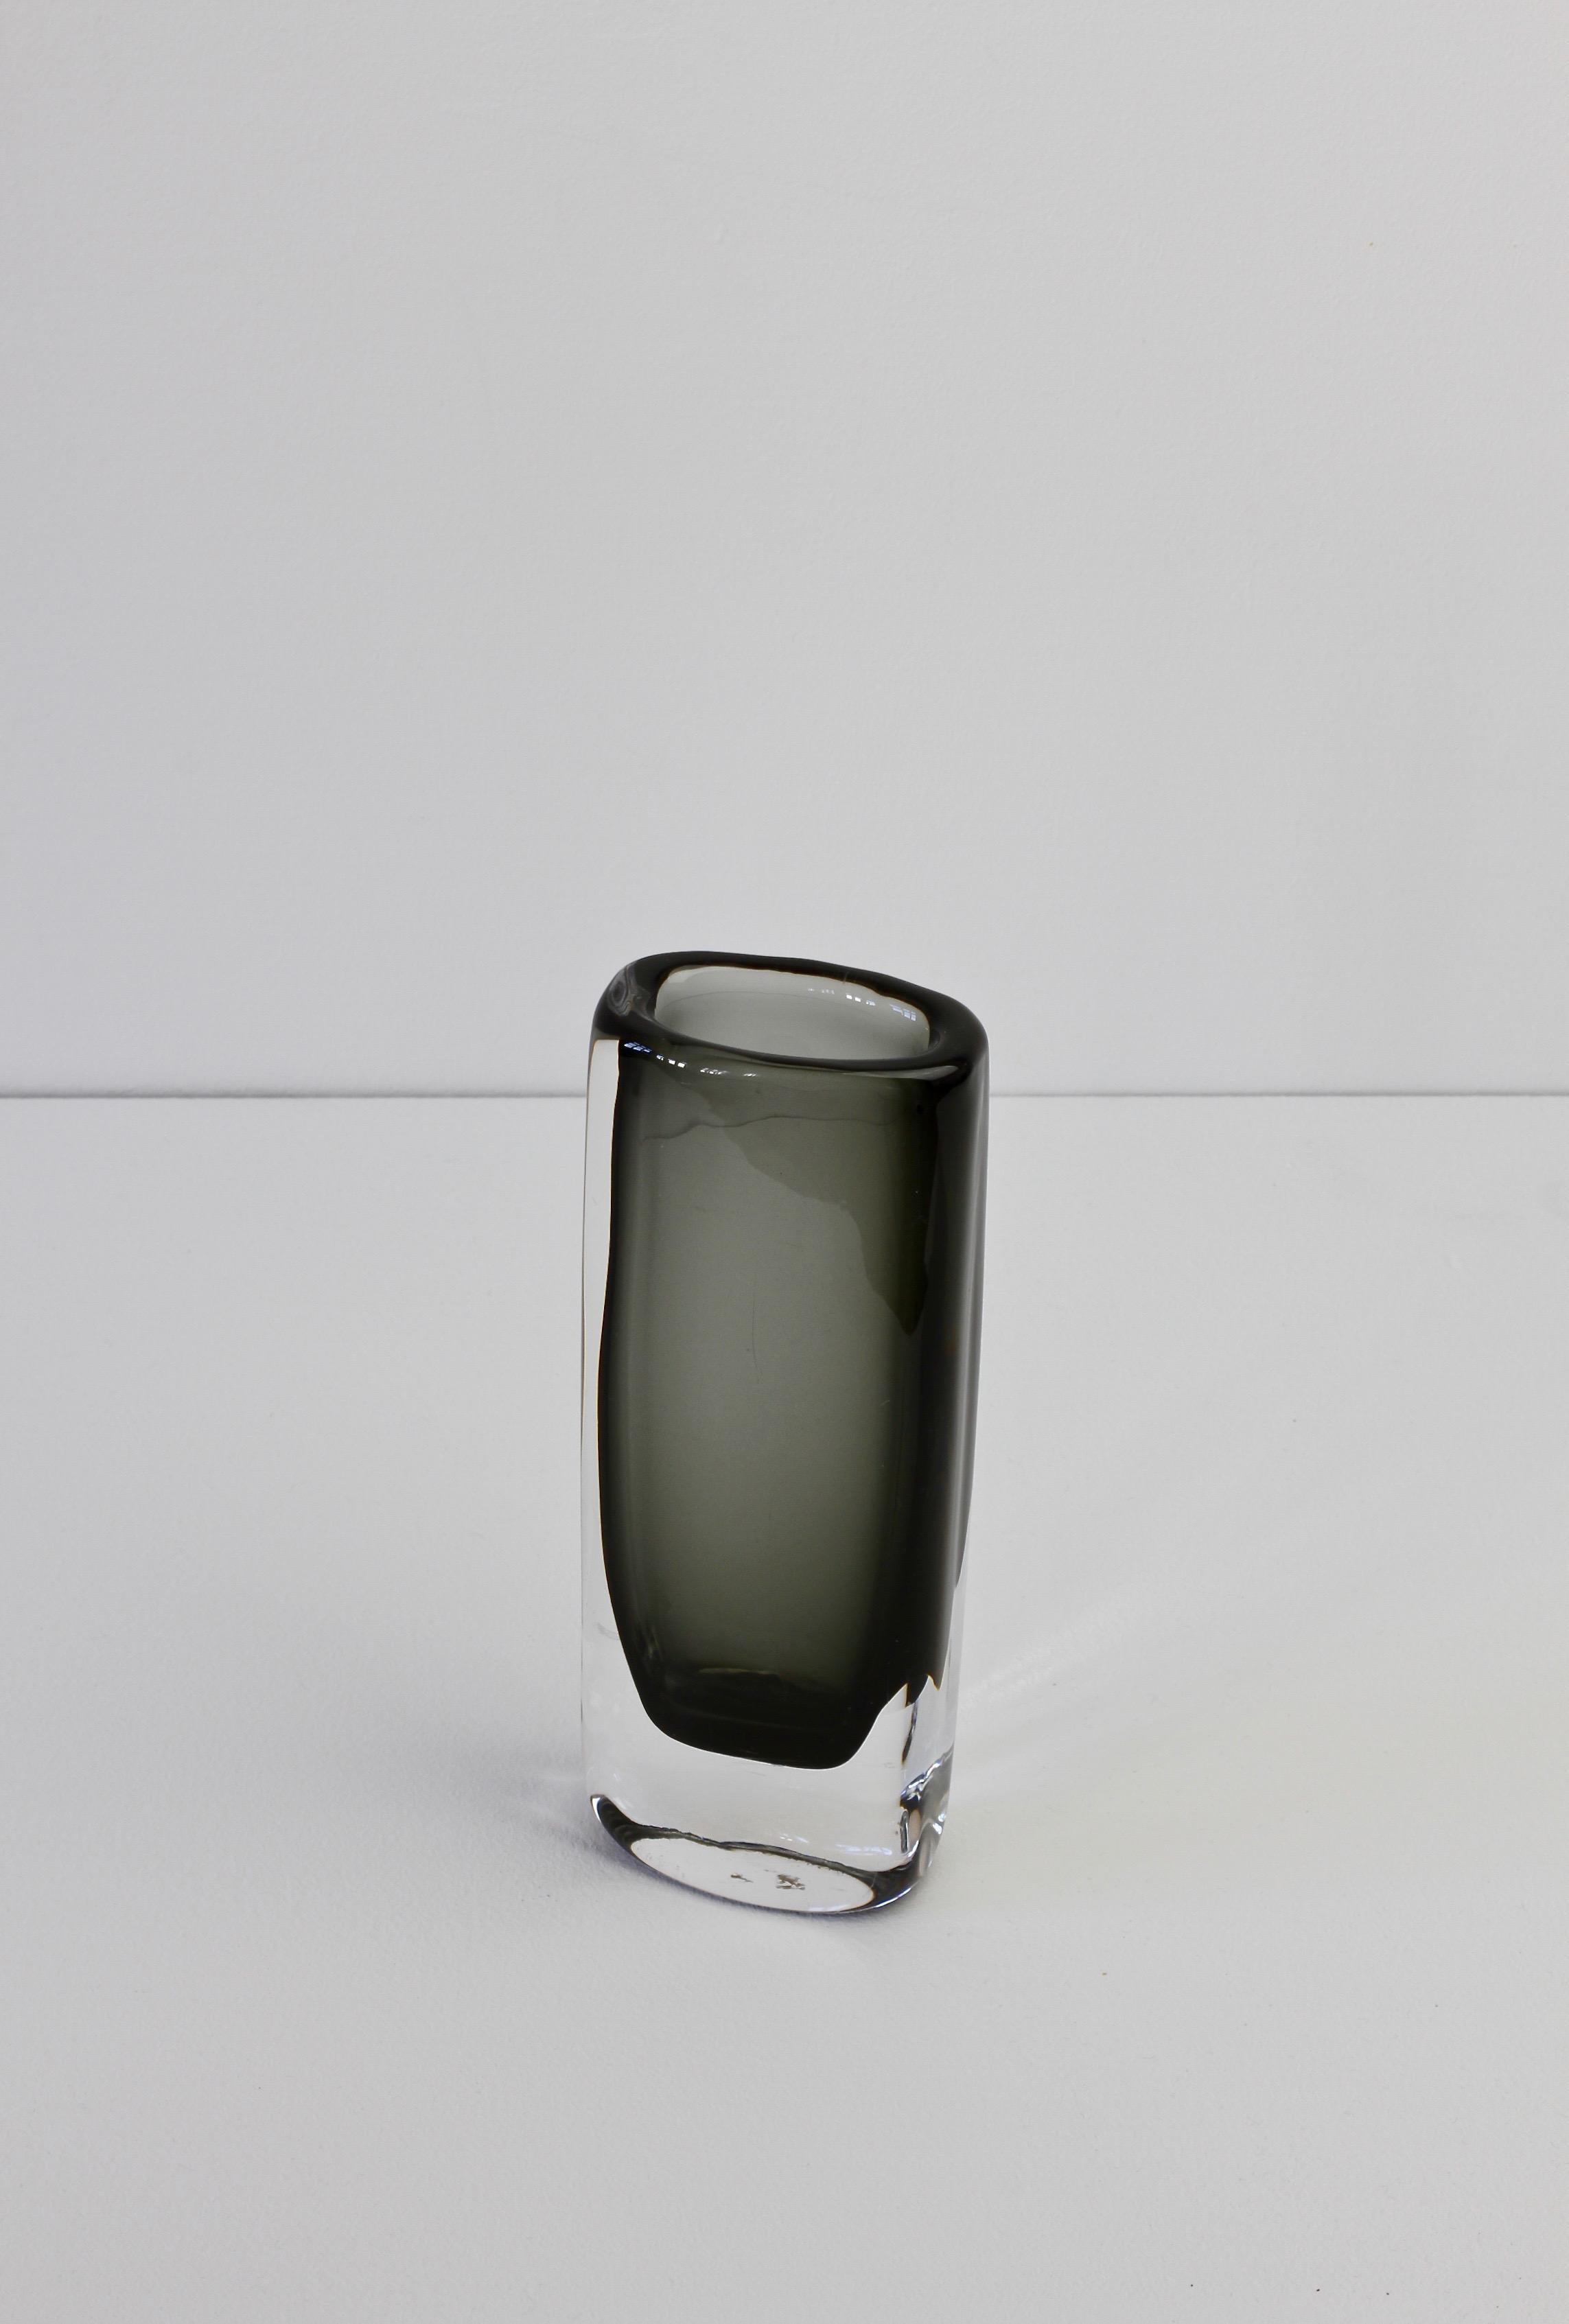 Tall 1950s Sommerso 'Dusk' Vase Signed by Nils Landberg for Orrefors Glass 6